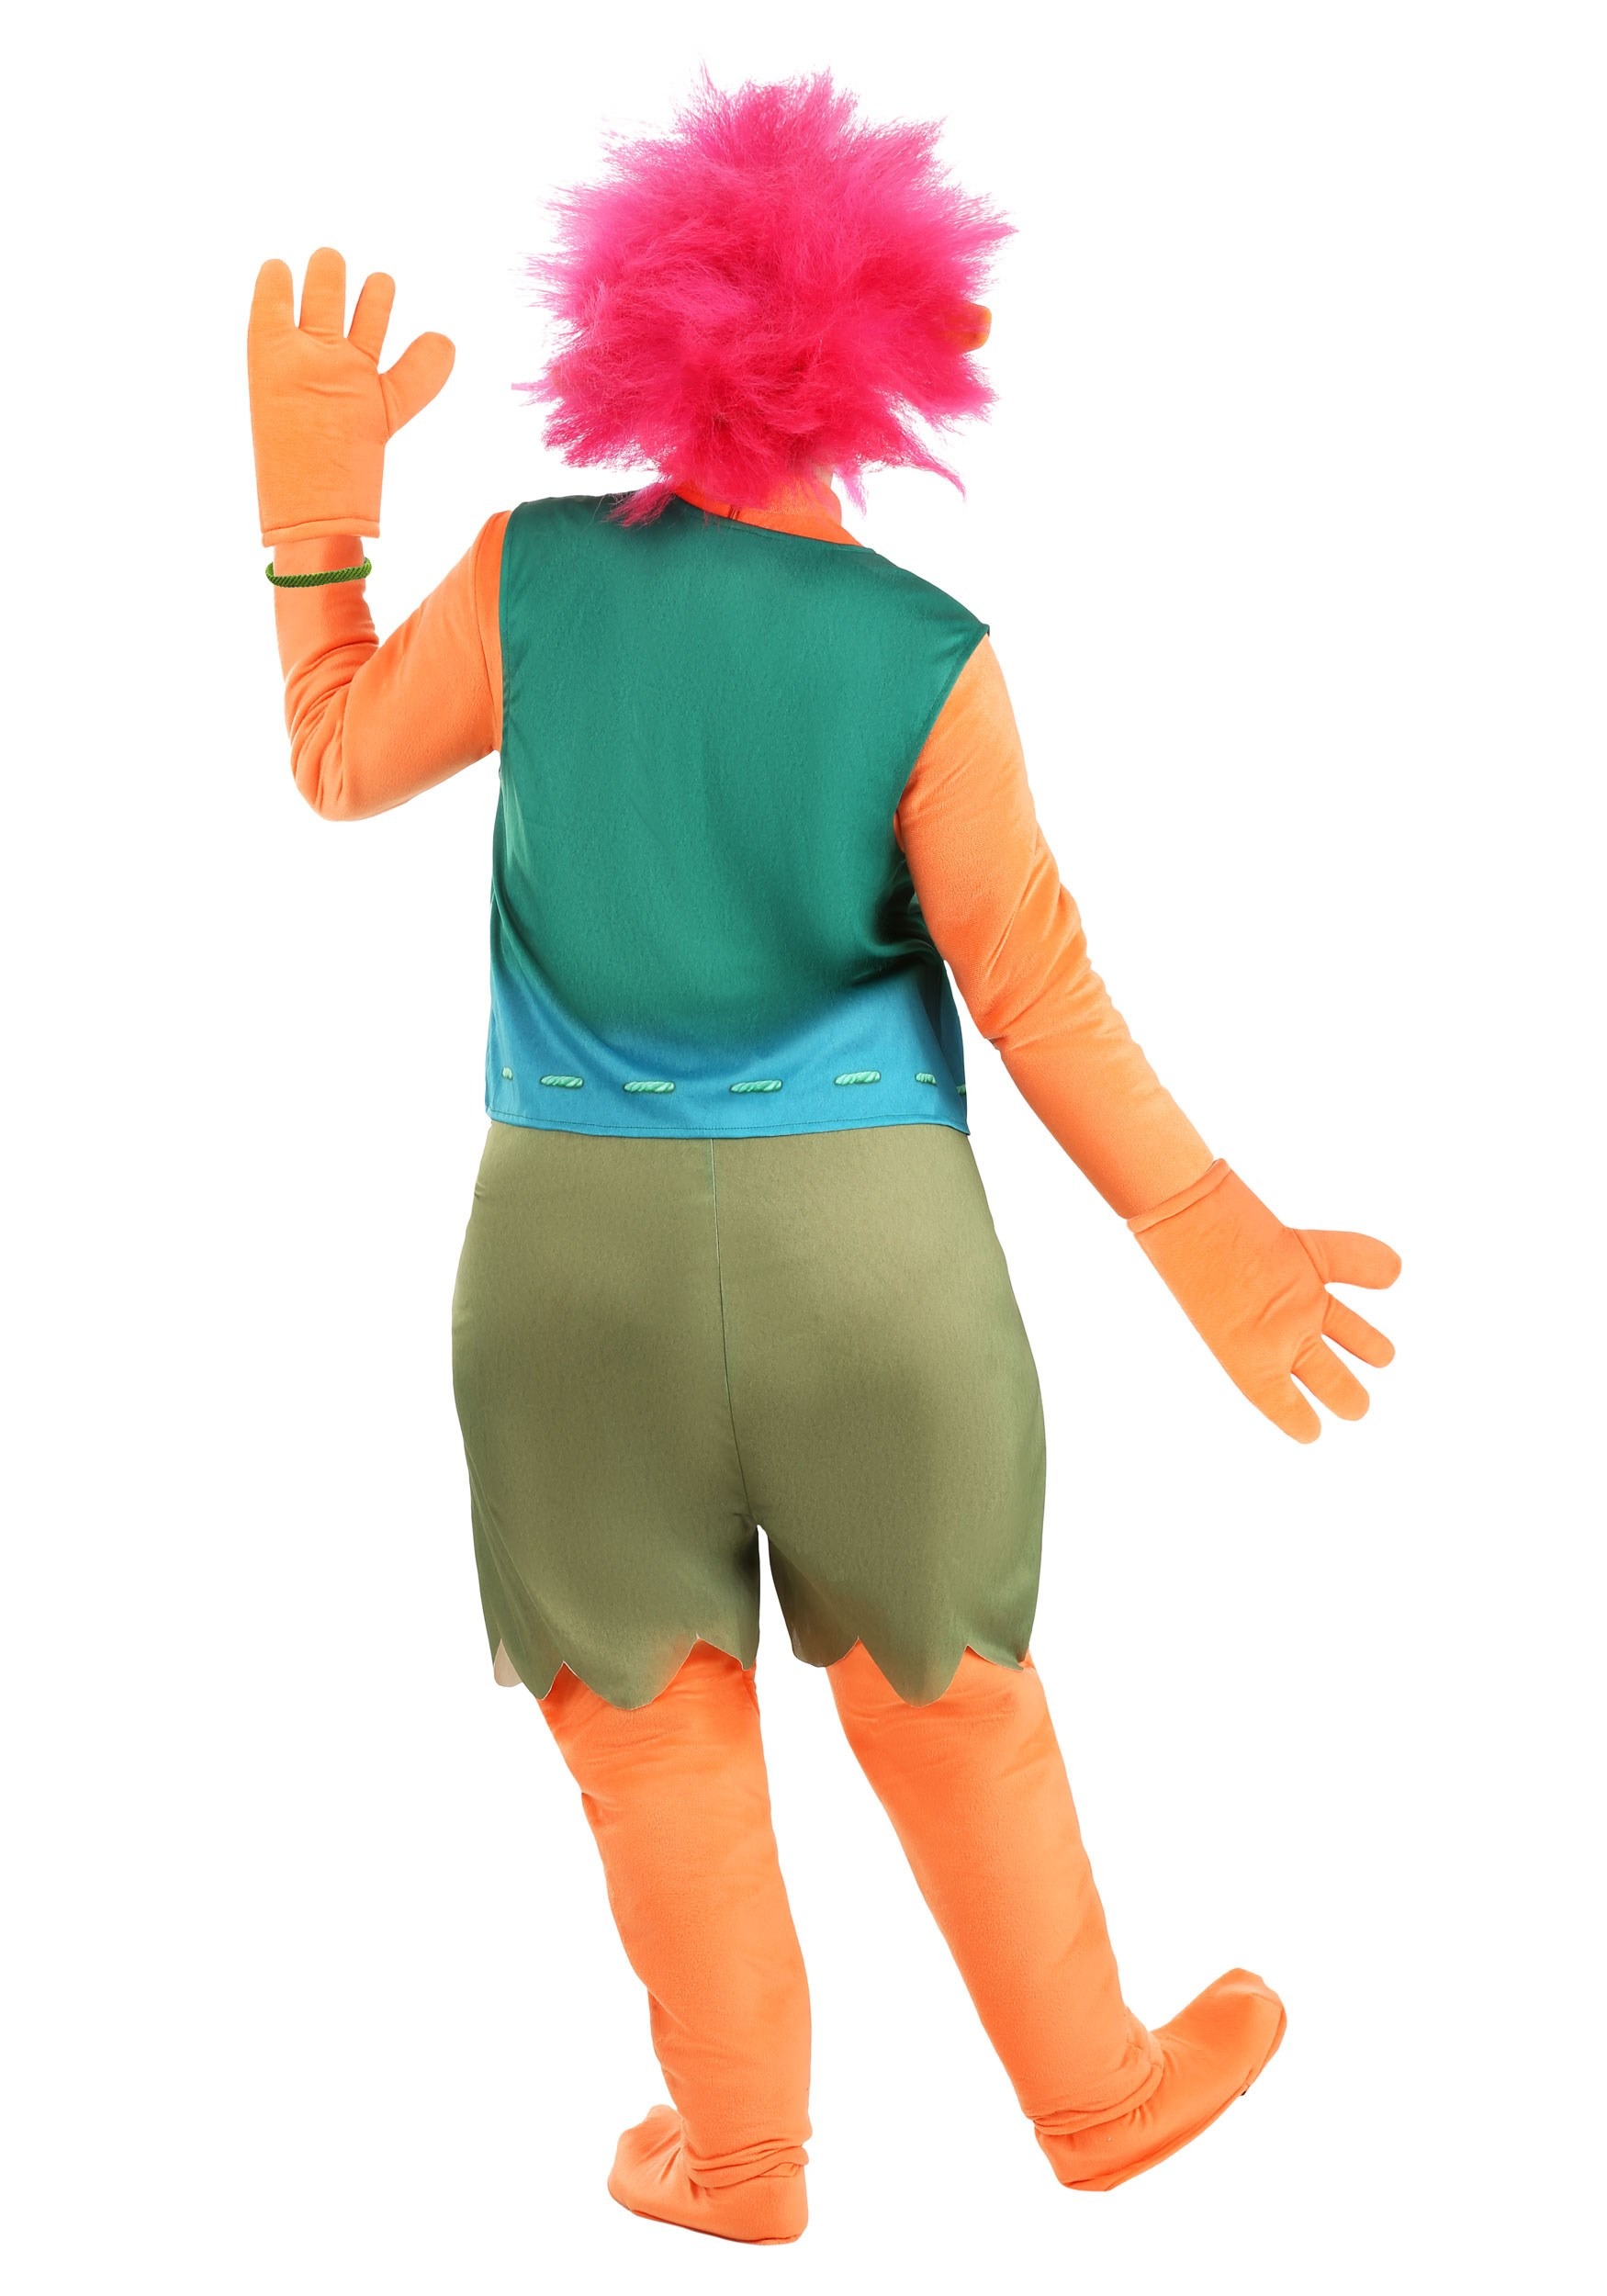 King Peppy Trolls Costume For Men